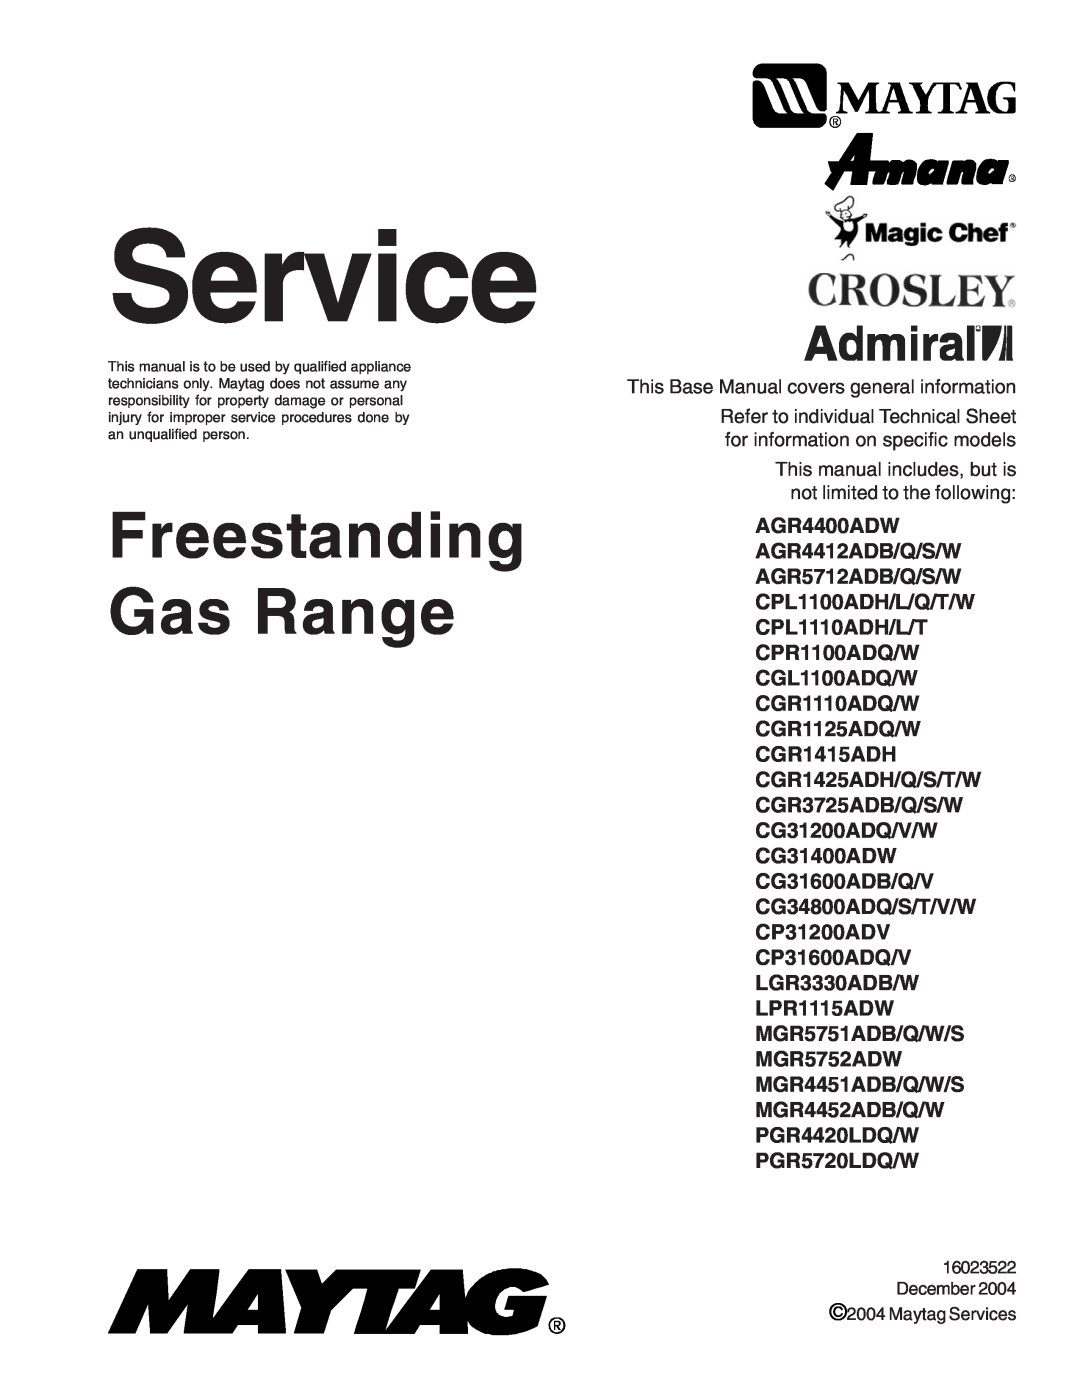 Maytag manual Service, AGR4400ADW AGR4412ADB/Q/S/W AGR5712ADB/Q/S/W CPL1100ADH/L/Q/T/W, Freestanding Gas Range 